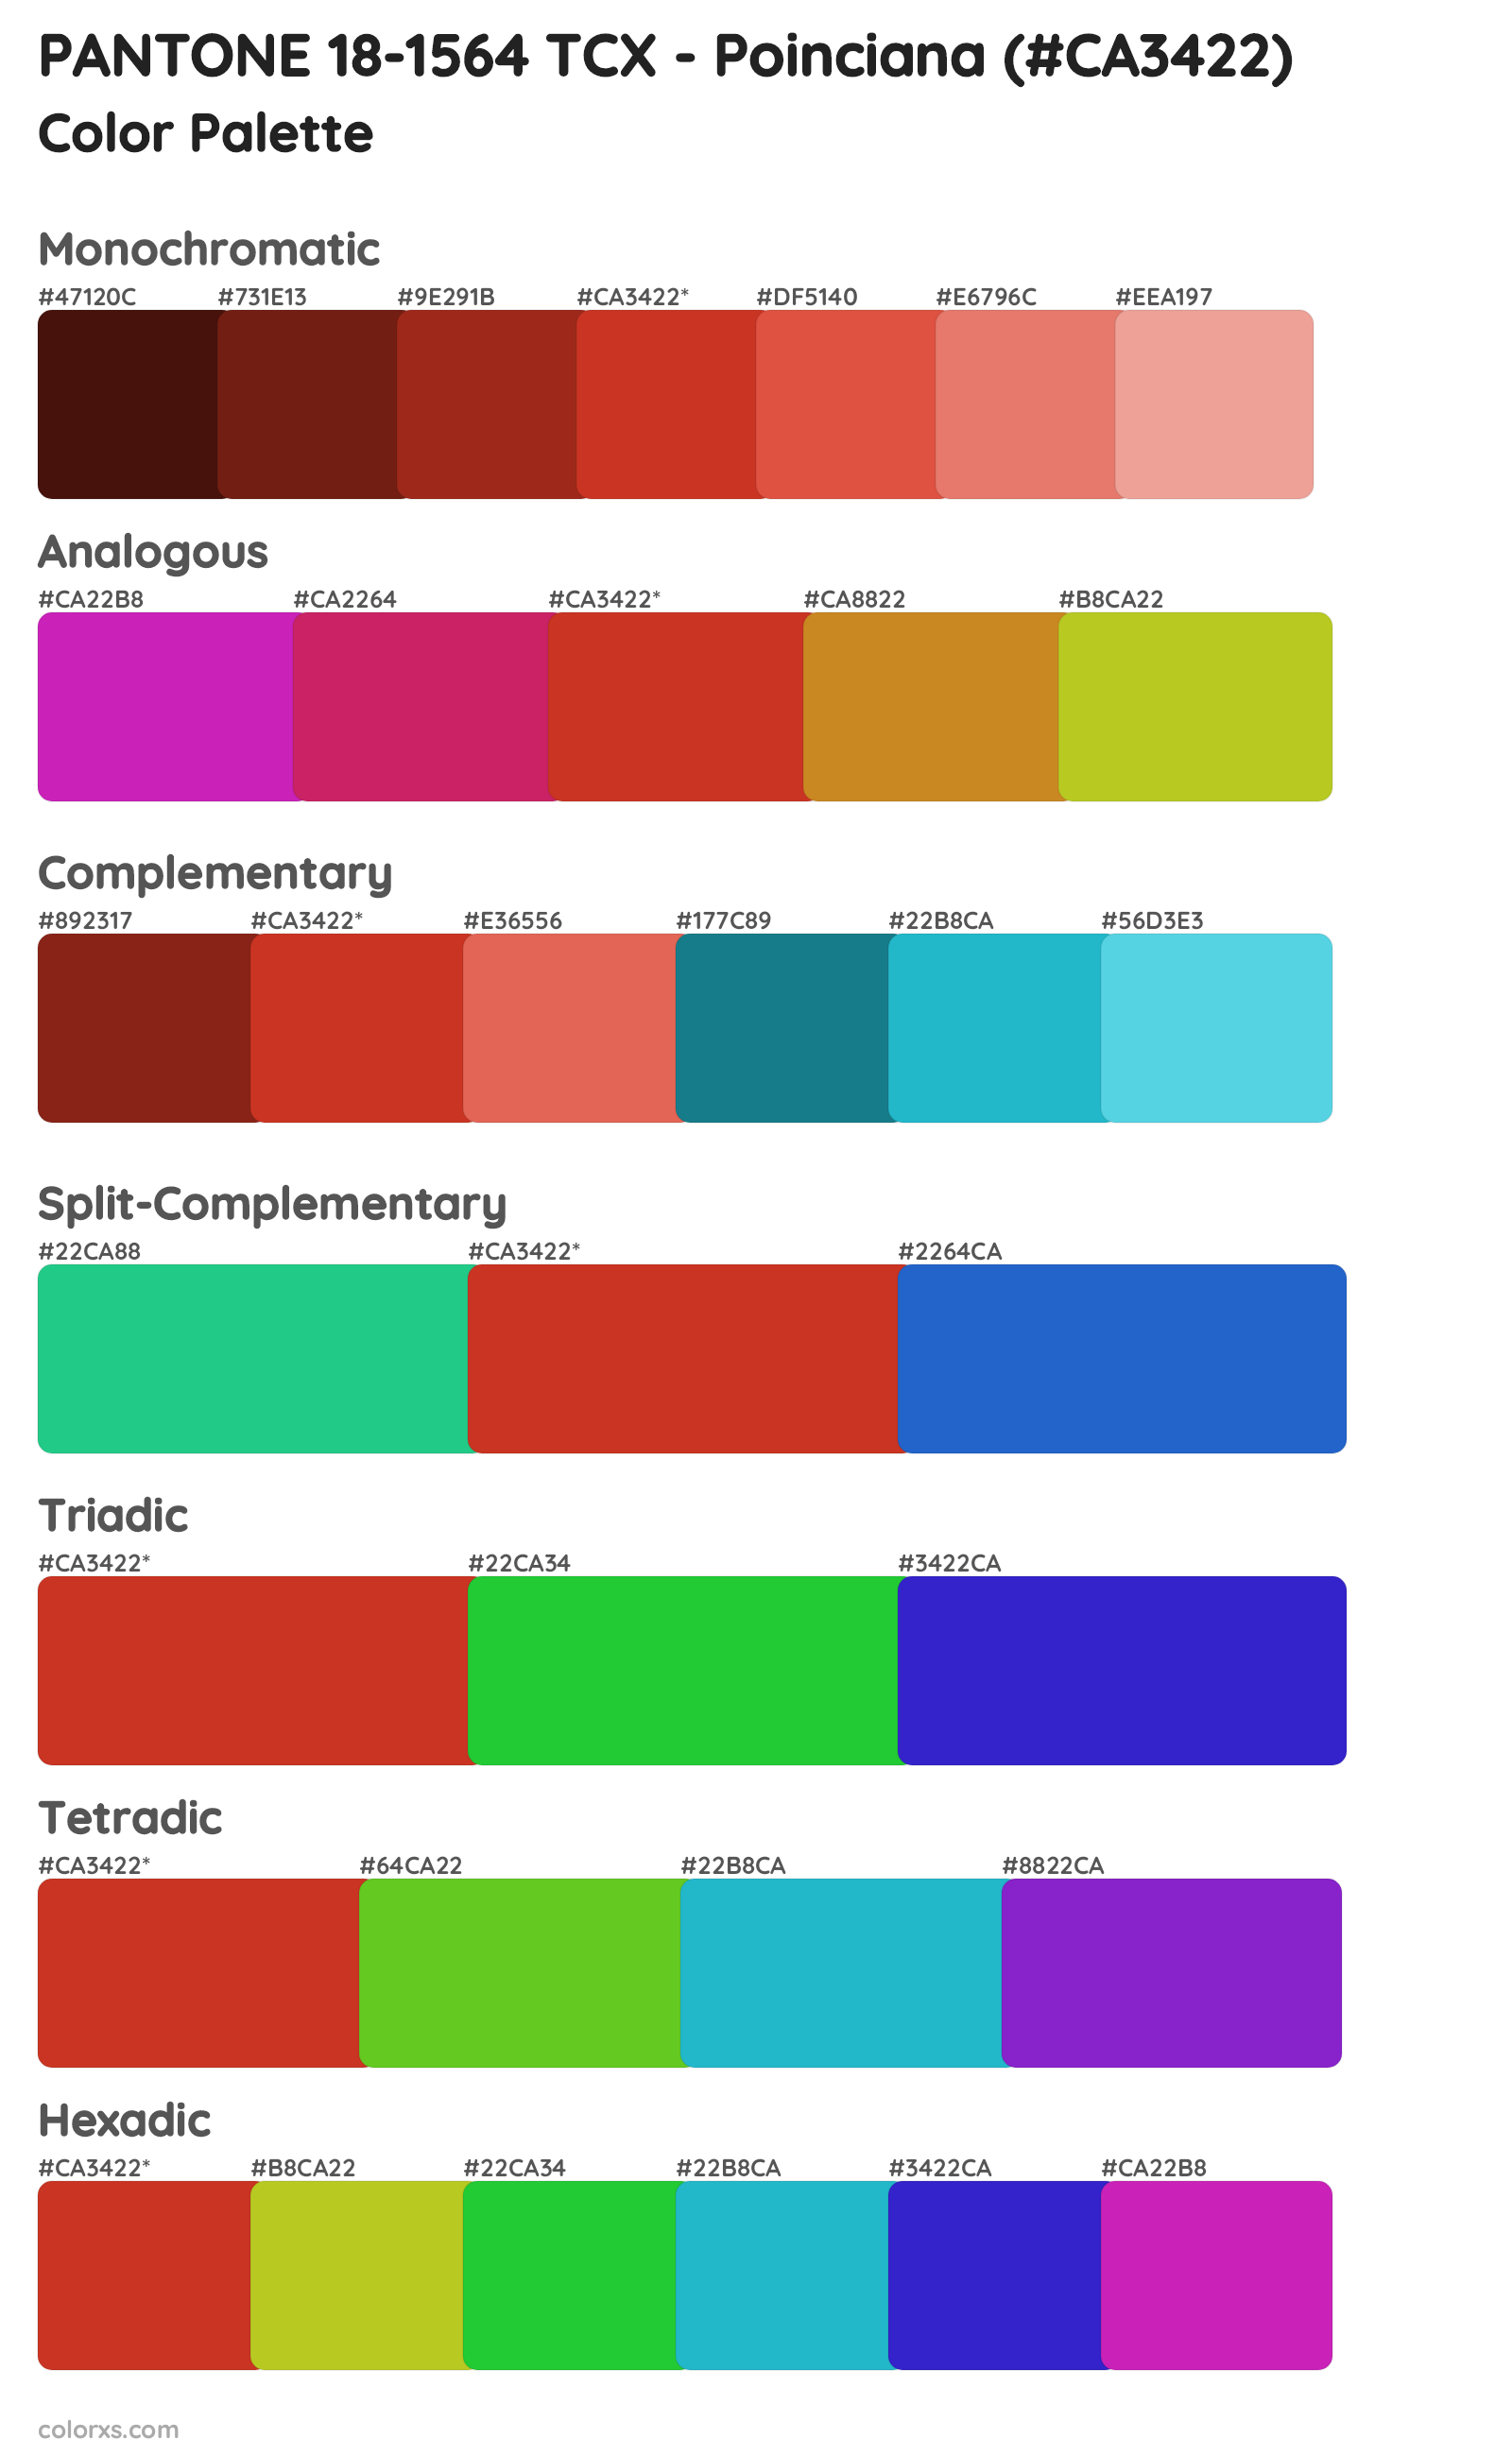 PANTONE 18-1564 TCX - Poinciana Color Scheme Palettes